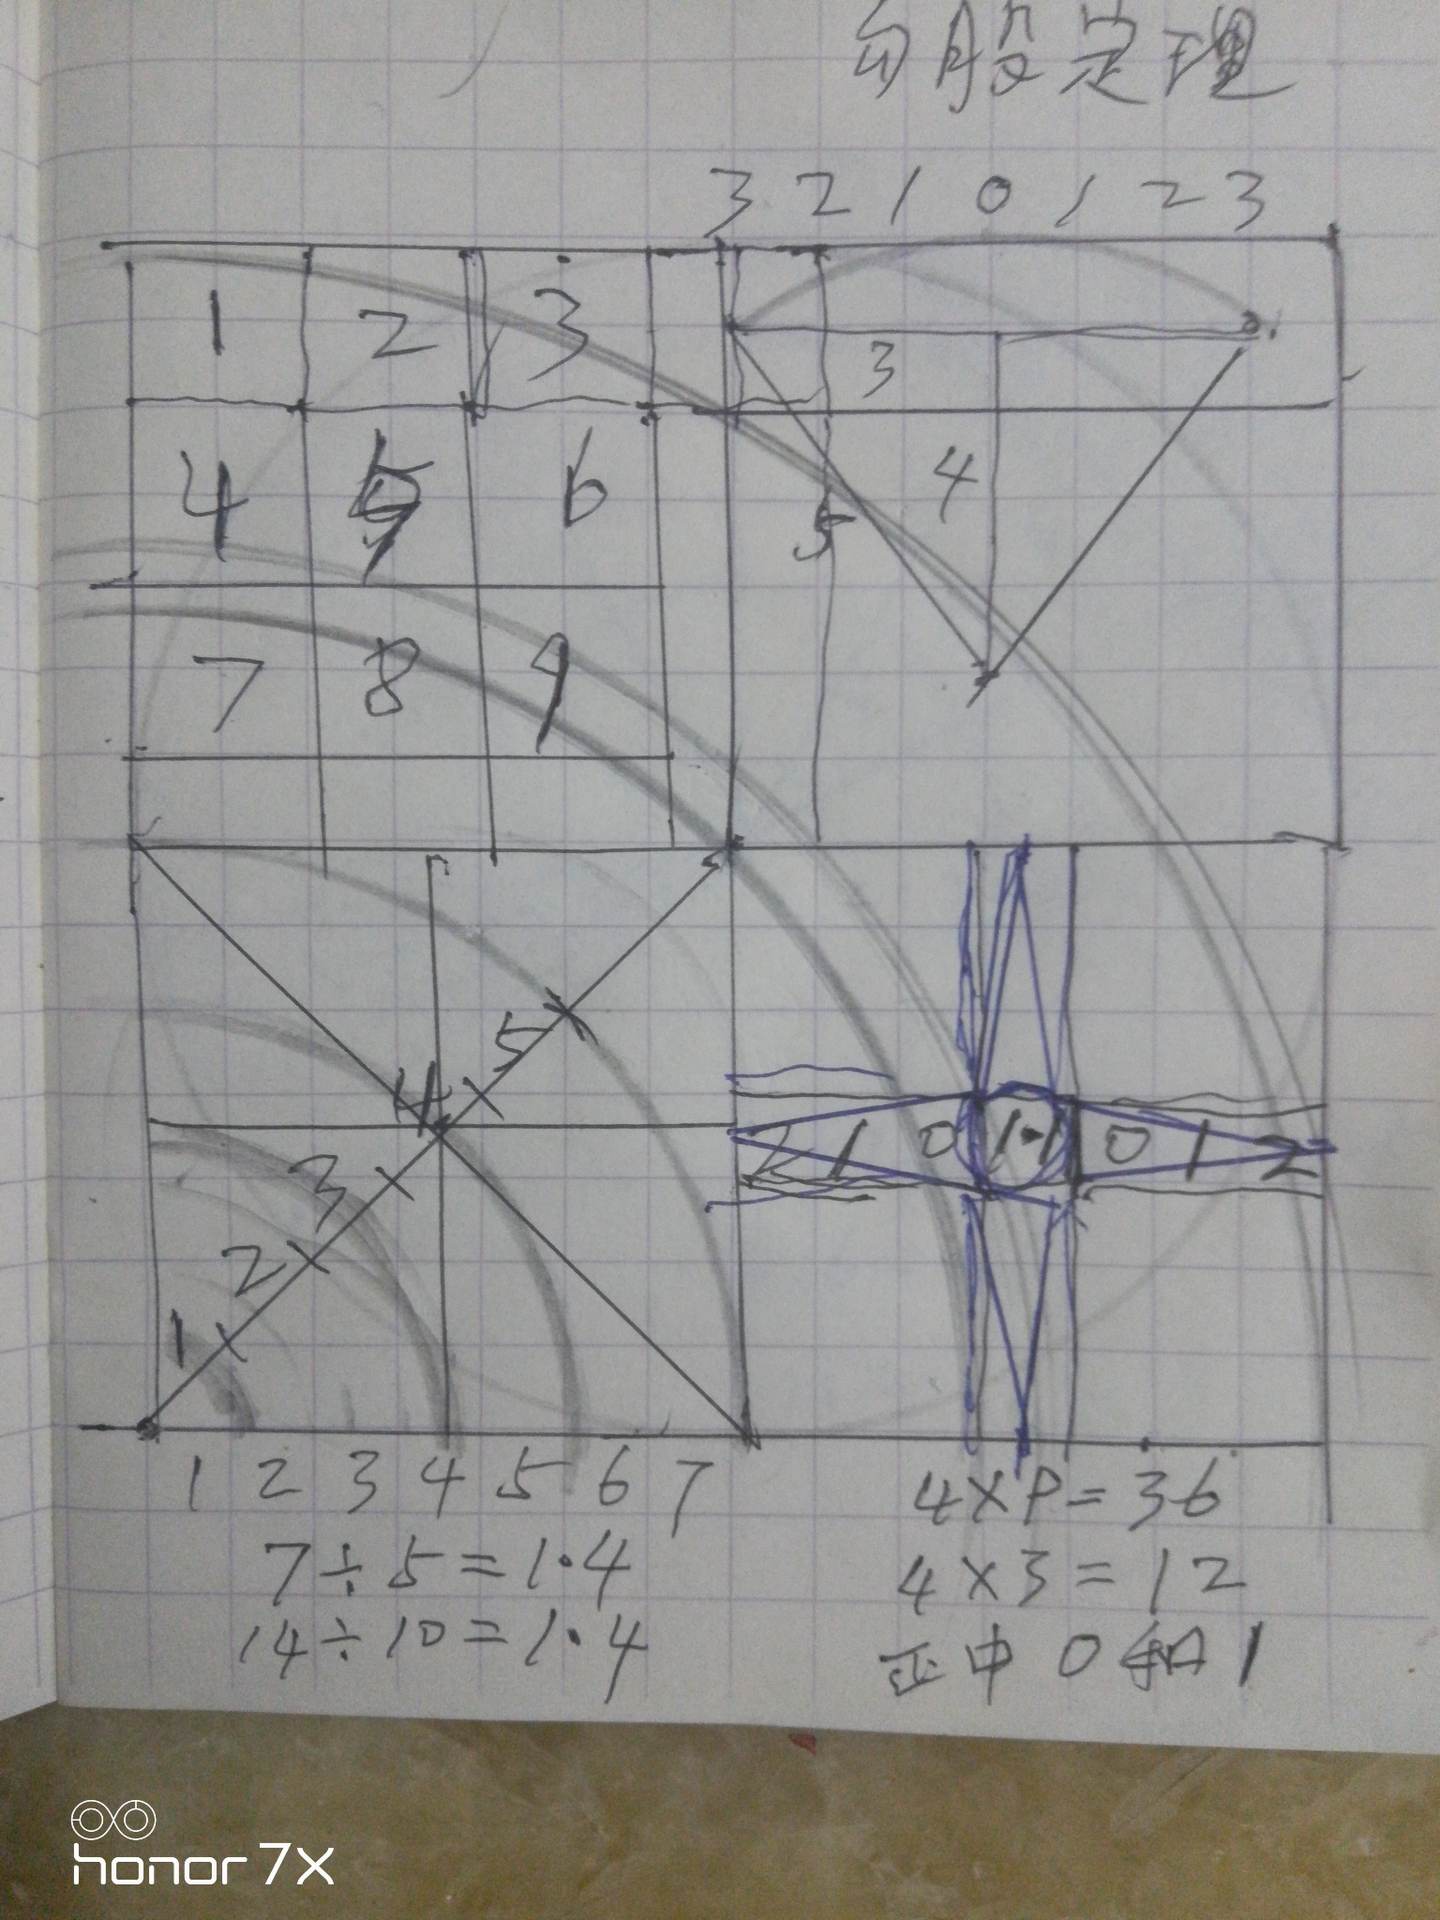 证明01 10 1前1后 大自然的正反规律 01和10的360度半径6份等边三角圆周时间 变成了 3份四方格面积模型 知乎